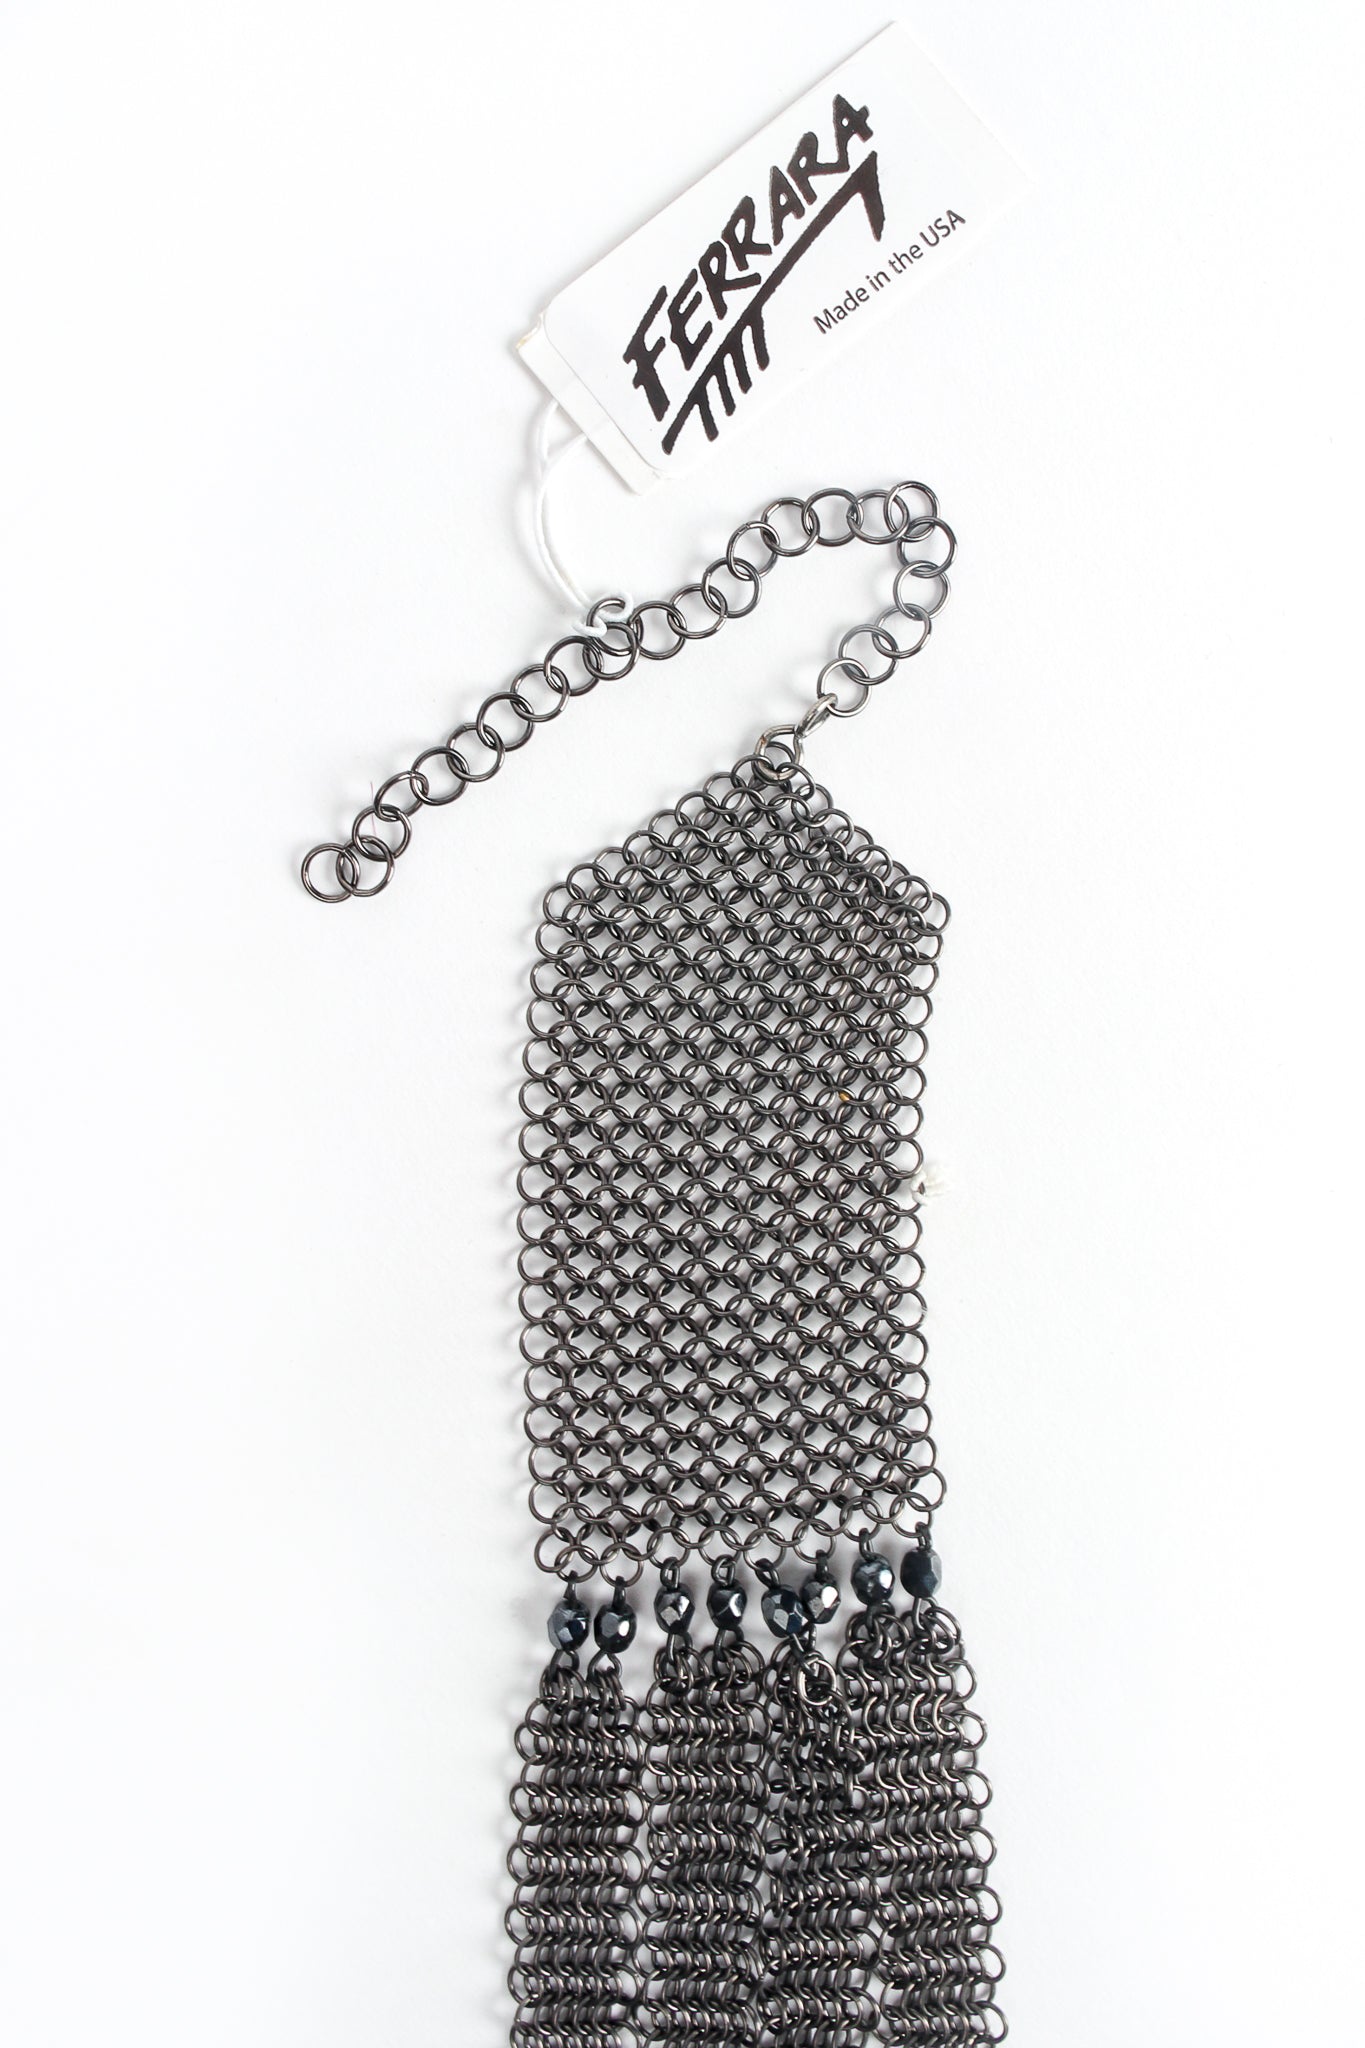 Vintage Anthony Ferrara Swarovski Crystal Lattice Mesh Collar Necklace hangtag at Recess LA